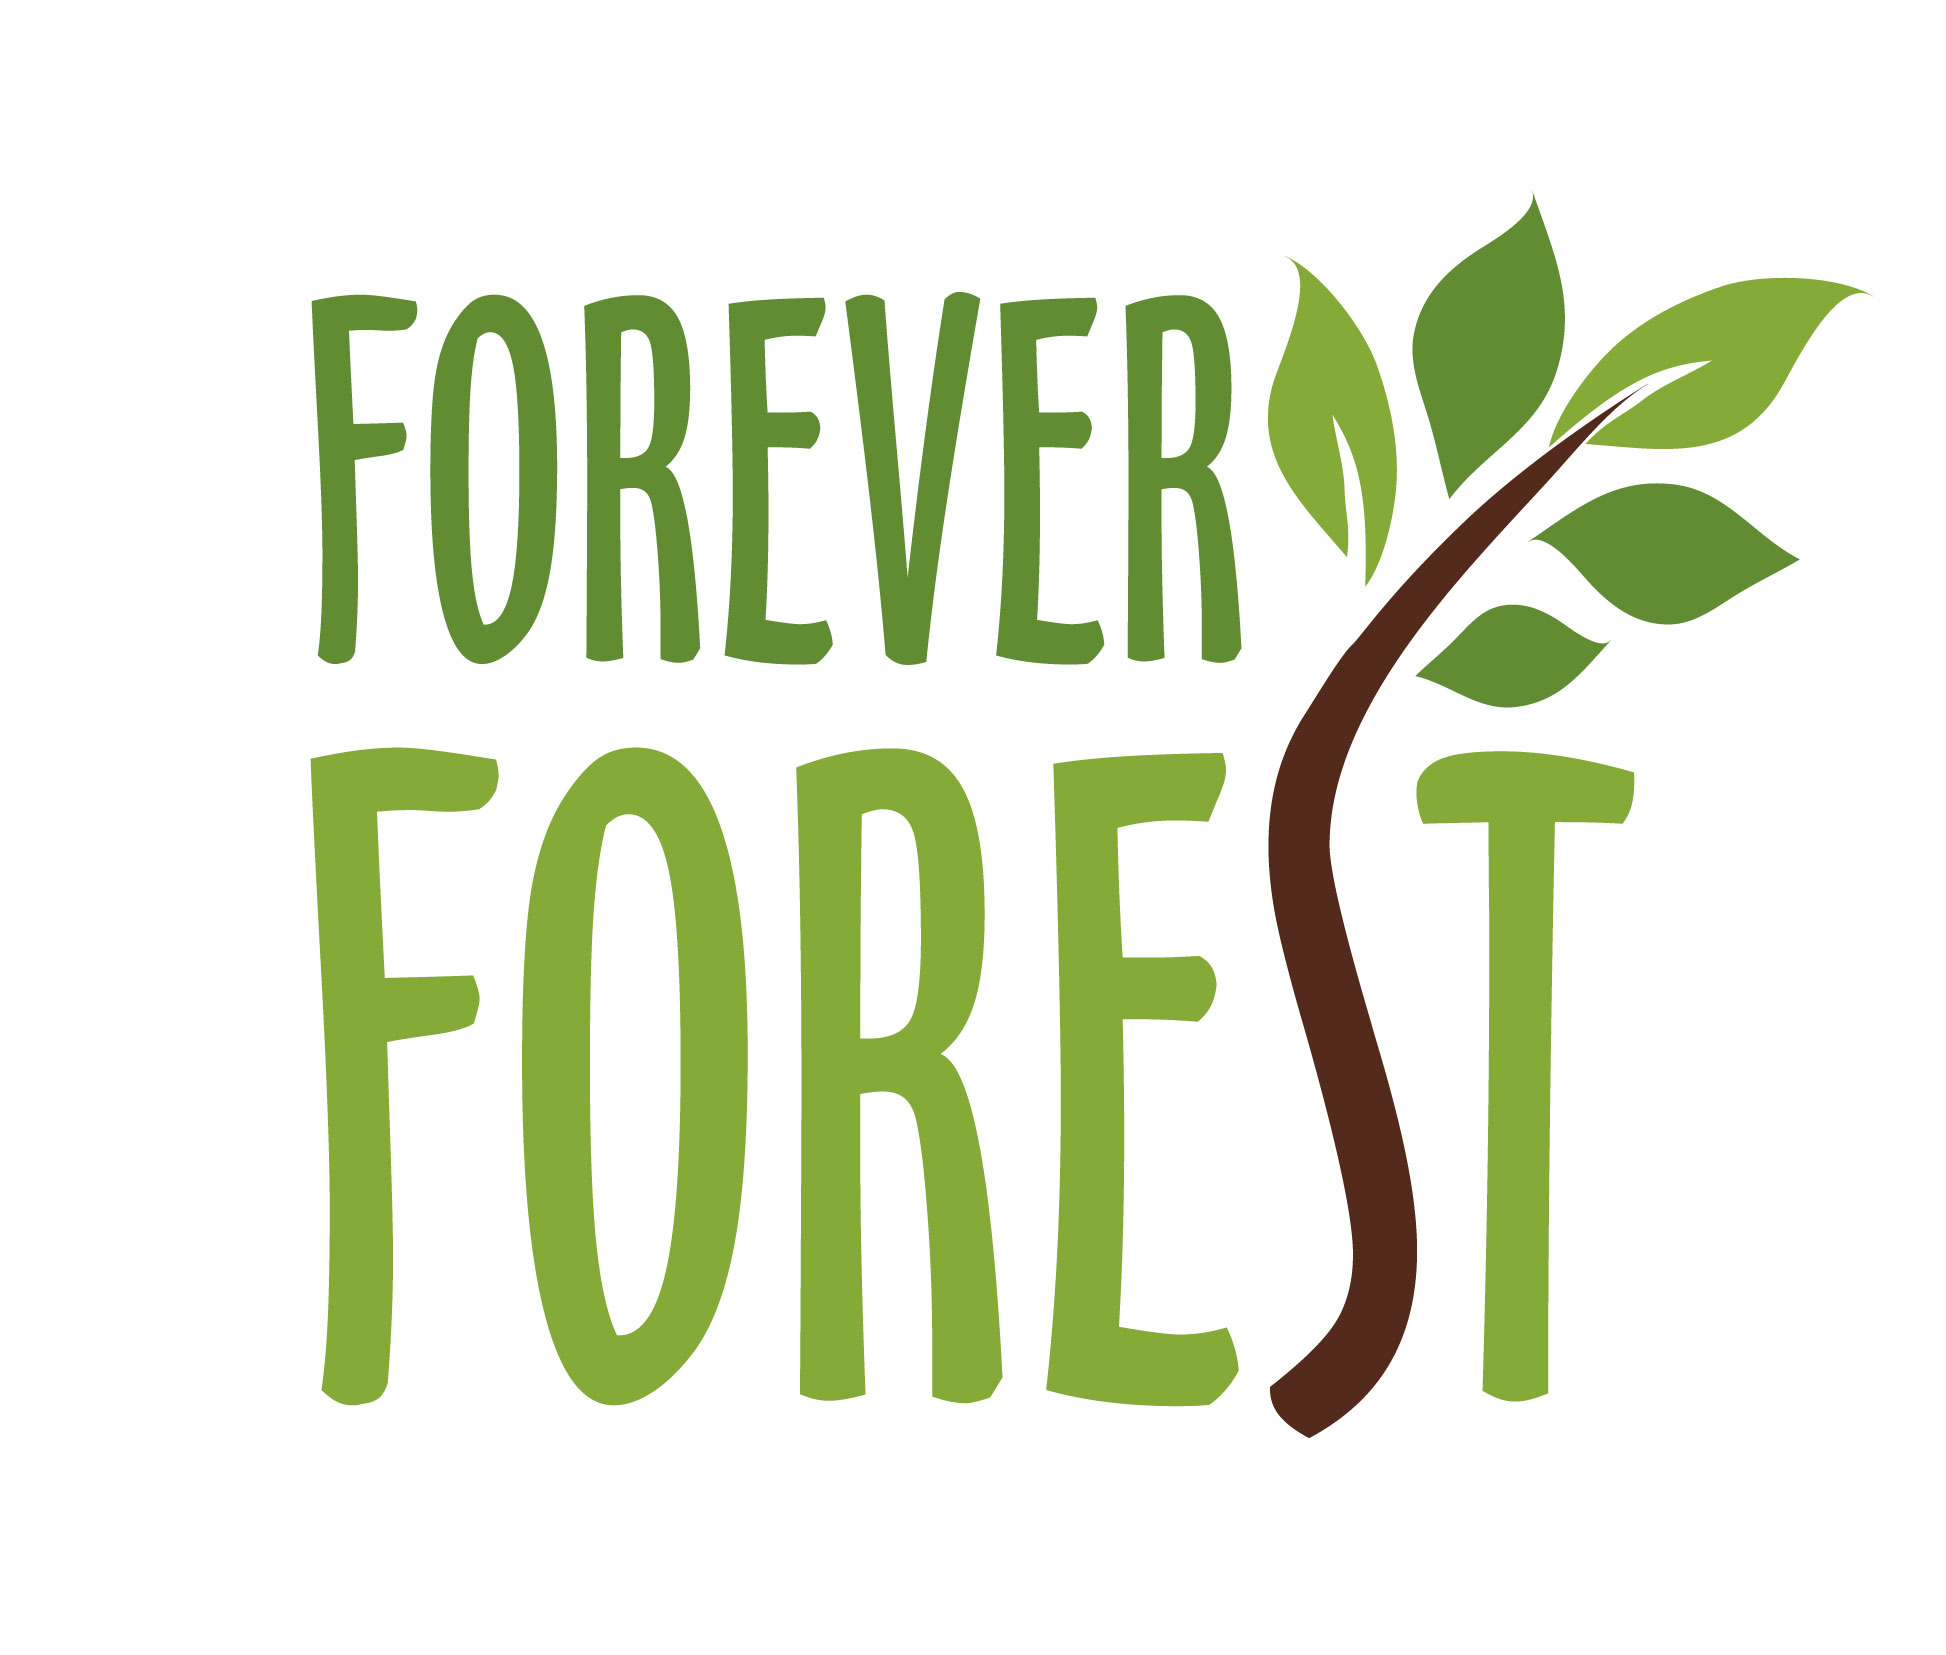 FOREVER FOREST logo